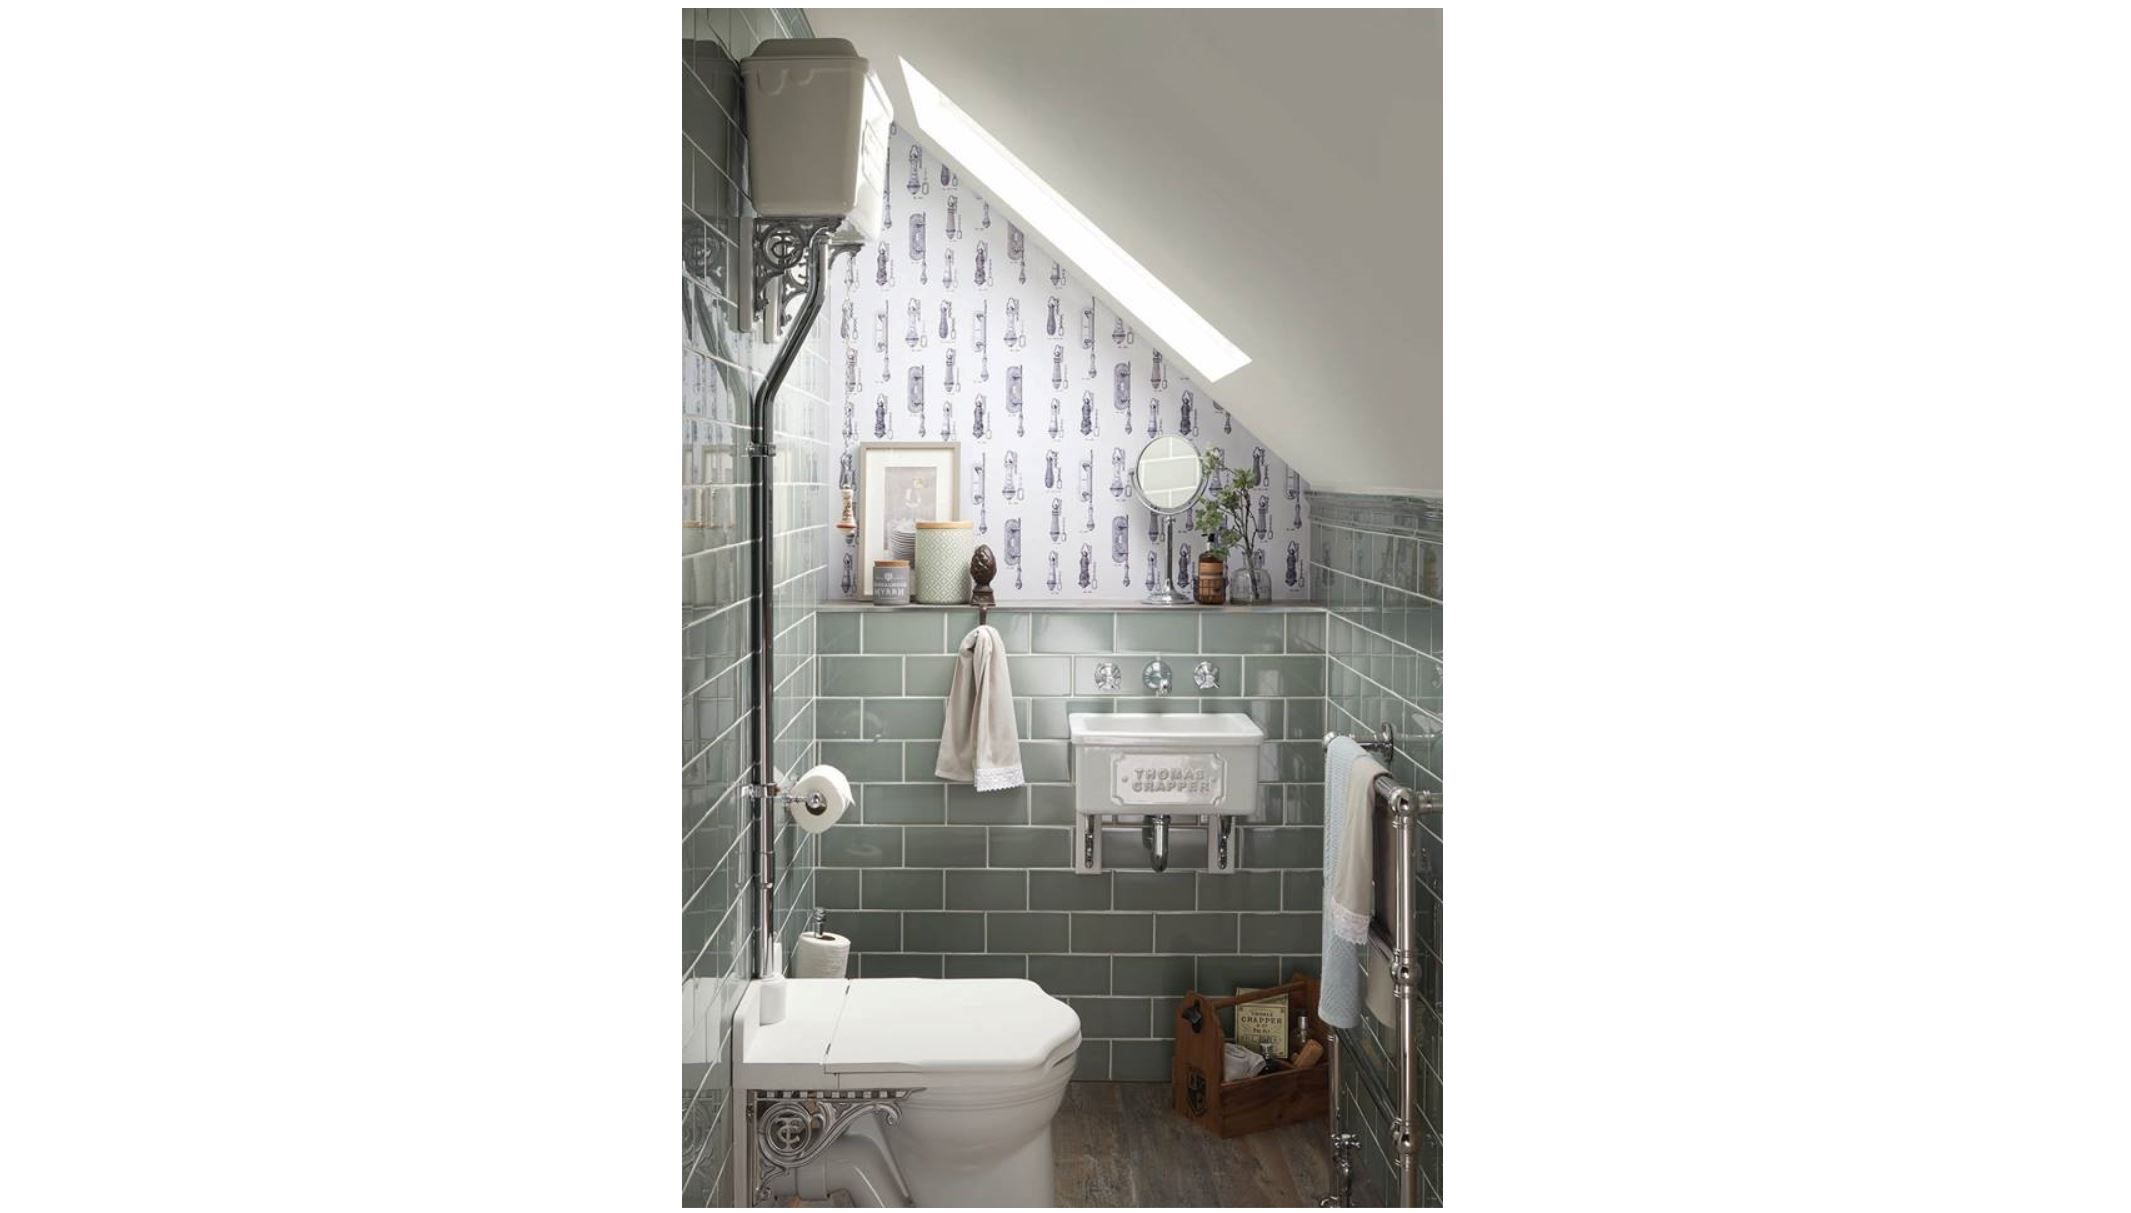 Thomas Crapper Bathroomware and Sanitaryware Available at UKAA